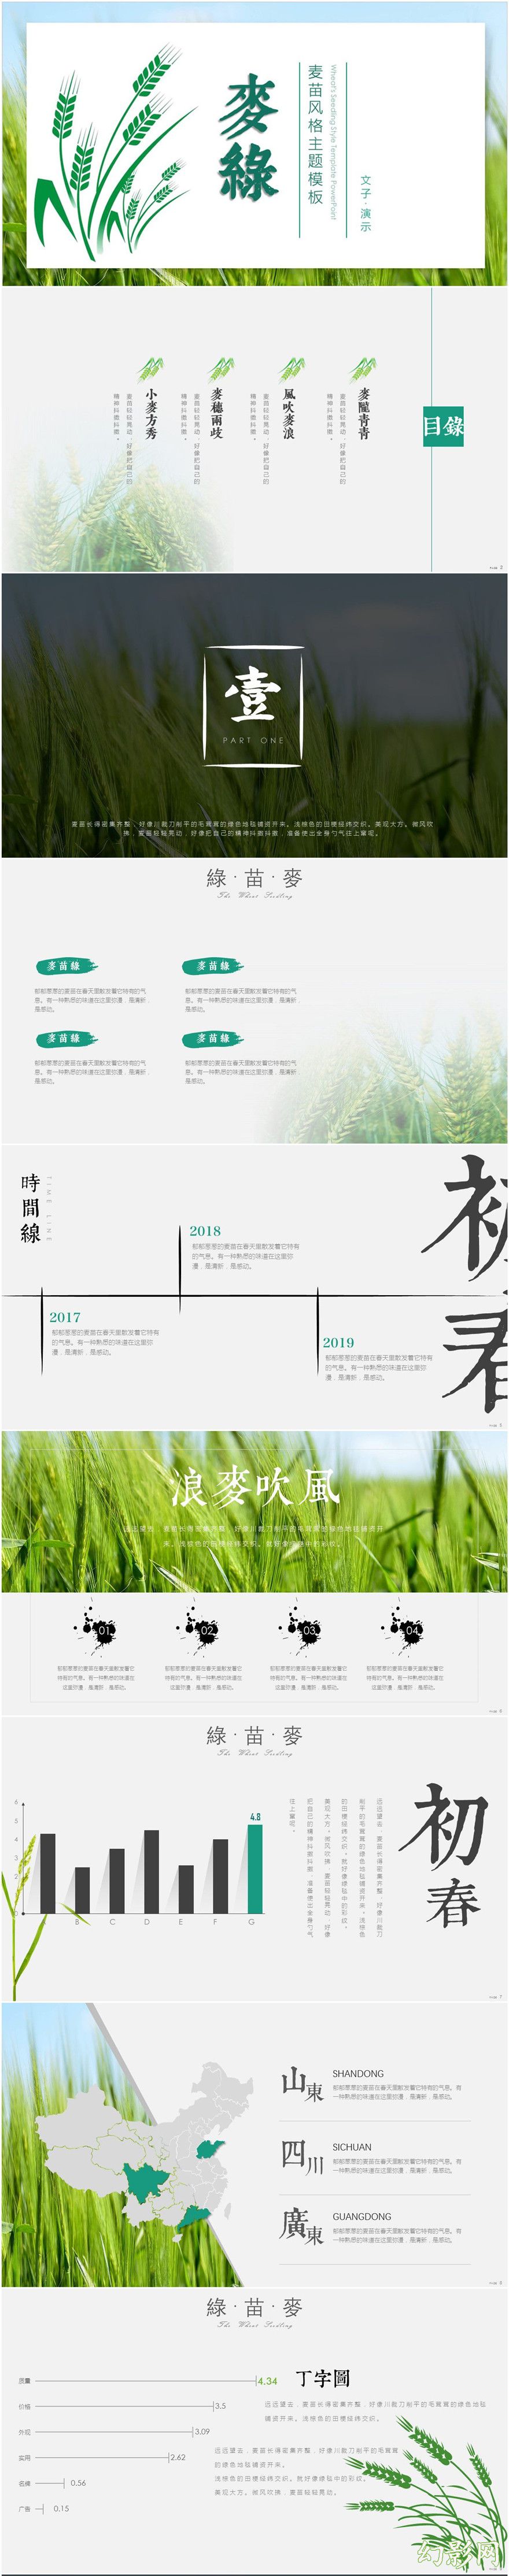  【麦陇青青三月时】绿色麦苗主题元素模板|文字效果见预览